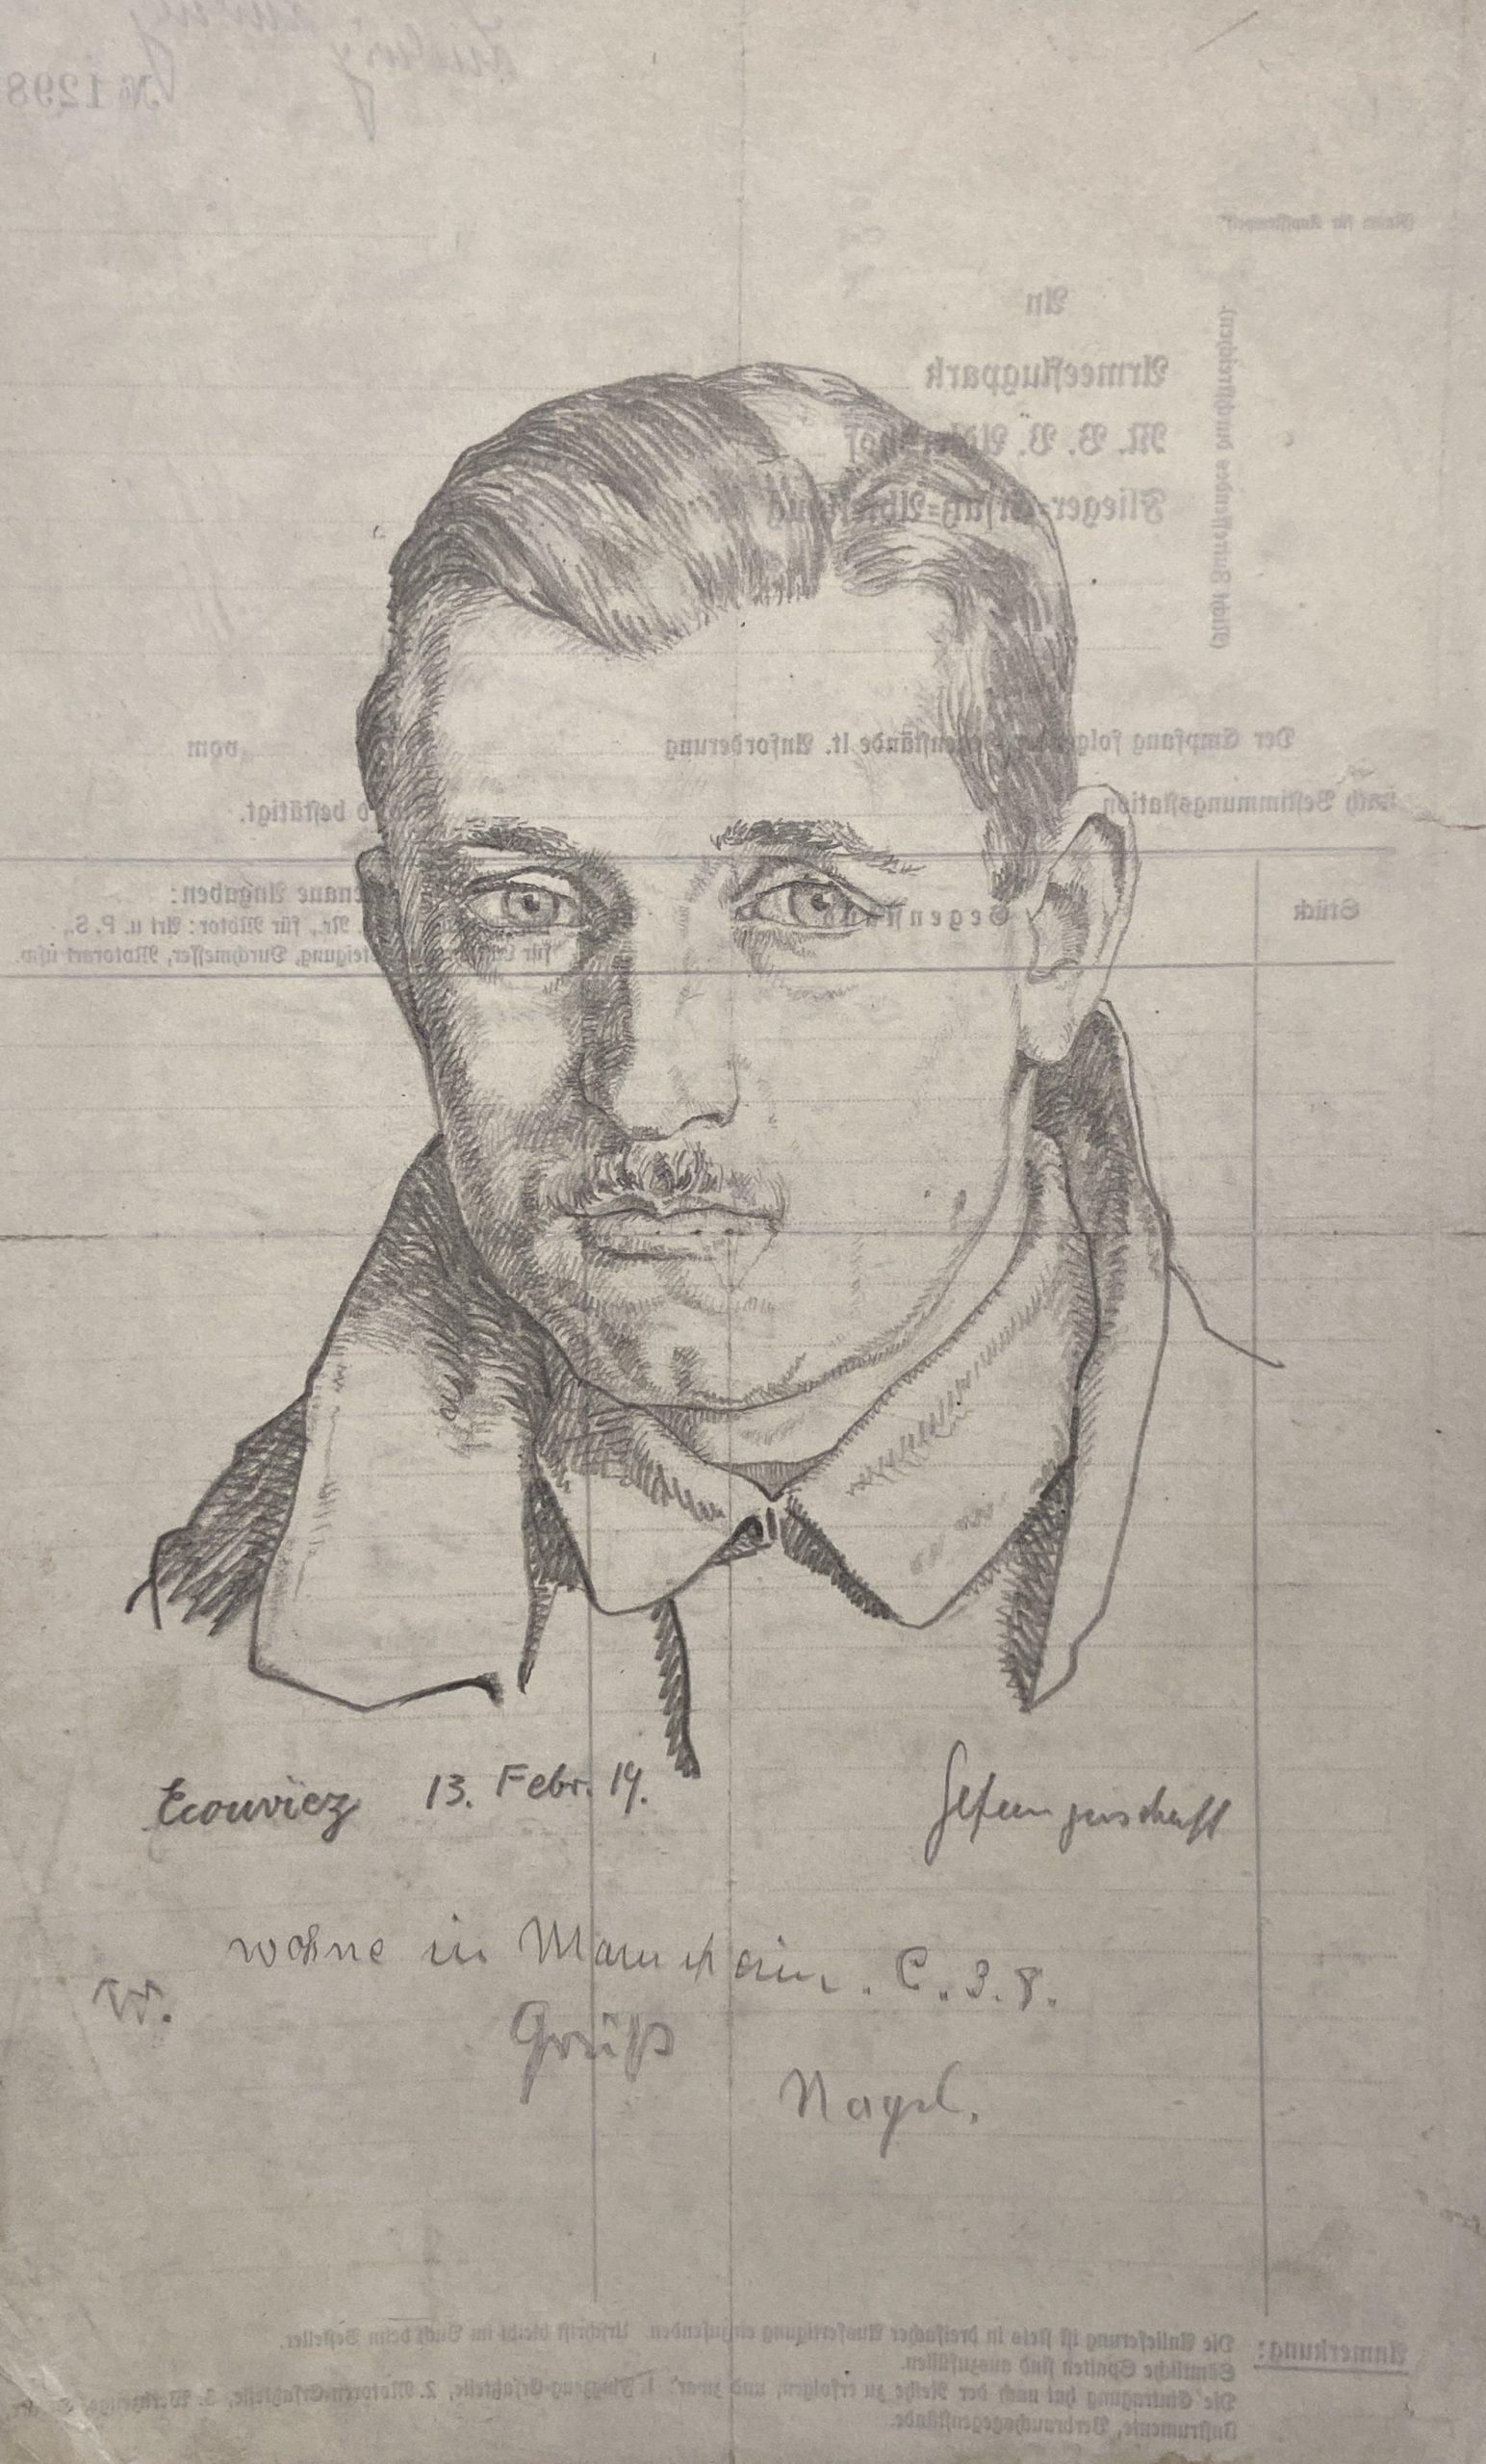 Portrait d'un aérographe allemand, graphite sur papier, 1919, document de Air Park - Art de Karl Ludwig Nagel